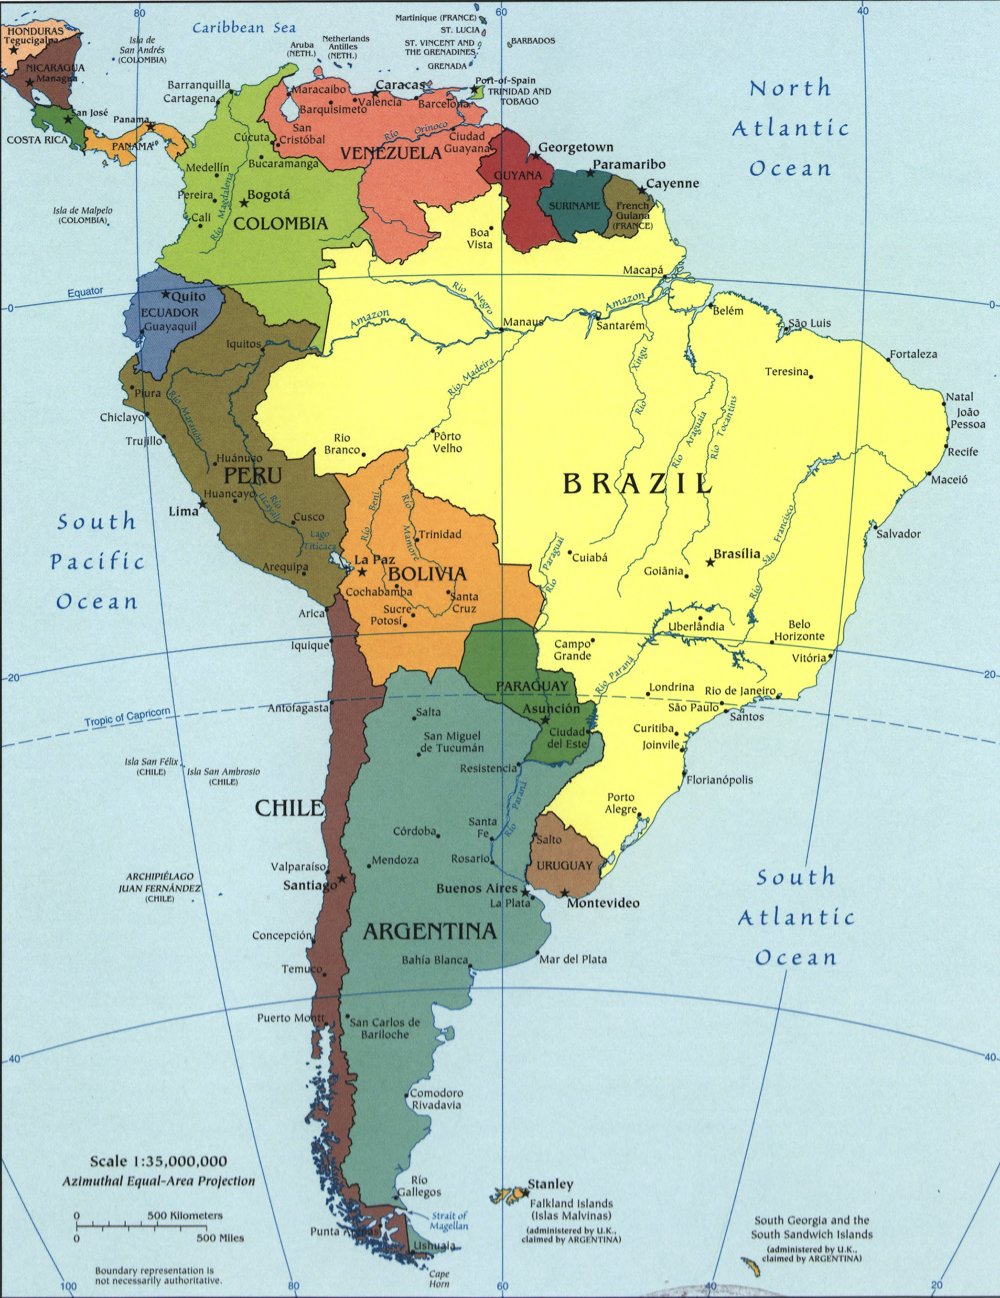 Bản đồ Châu Nam Mỹ - Địa lý Châu Nam Mỹ:
Bản đồ Châu Nam Mỹ giúp chúng ta tìm hiểu về địa lý và văn hóa của khu vực này. Châu Nam Mỹ rộng lớn với nhiều quốc gia và nền văn hóa đa dạng, bao gồm rừng nhiệt đới Amazon và vùng đất cao Andes tuyệt đẹp.